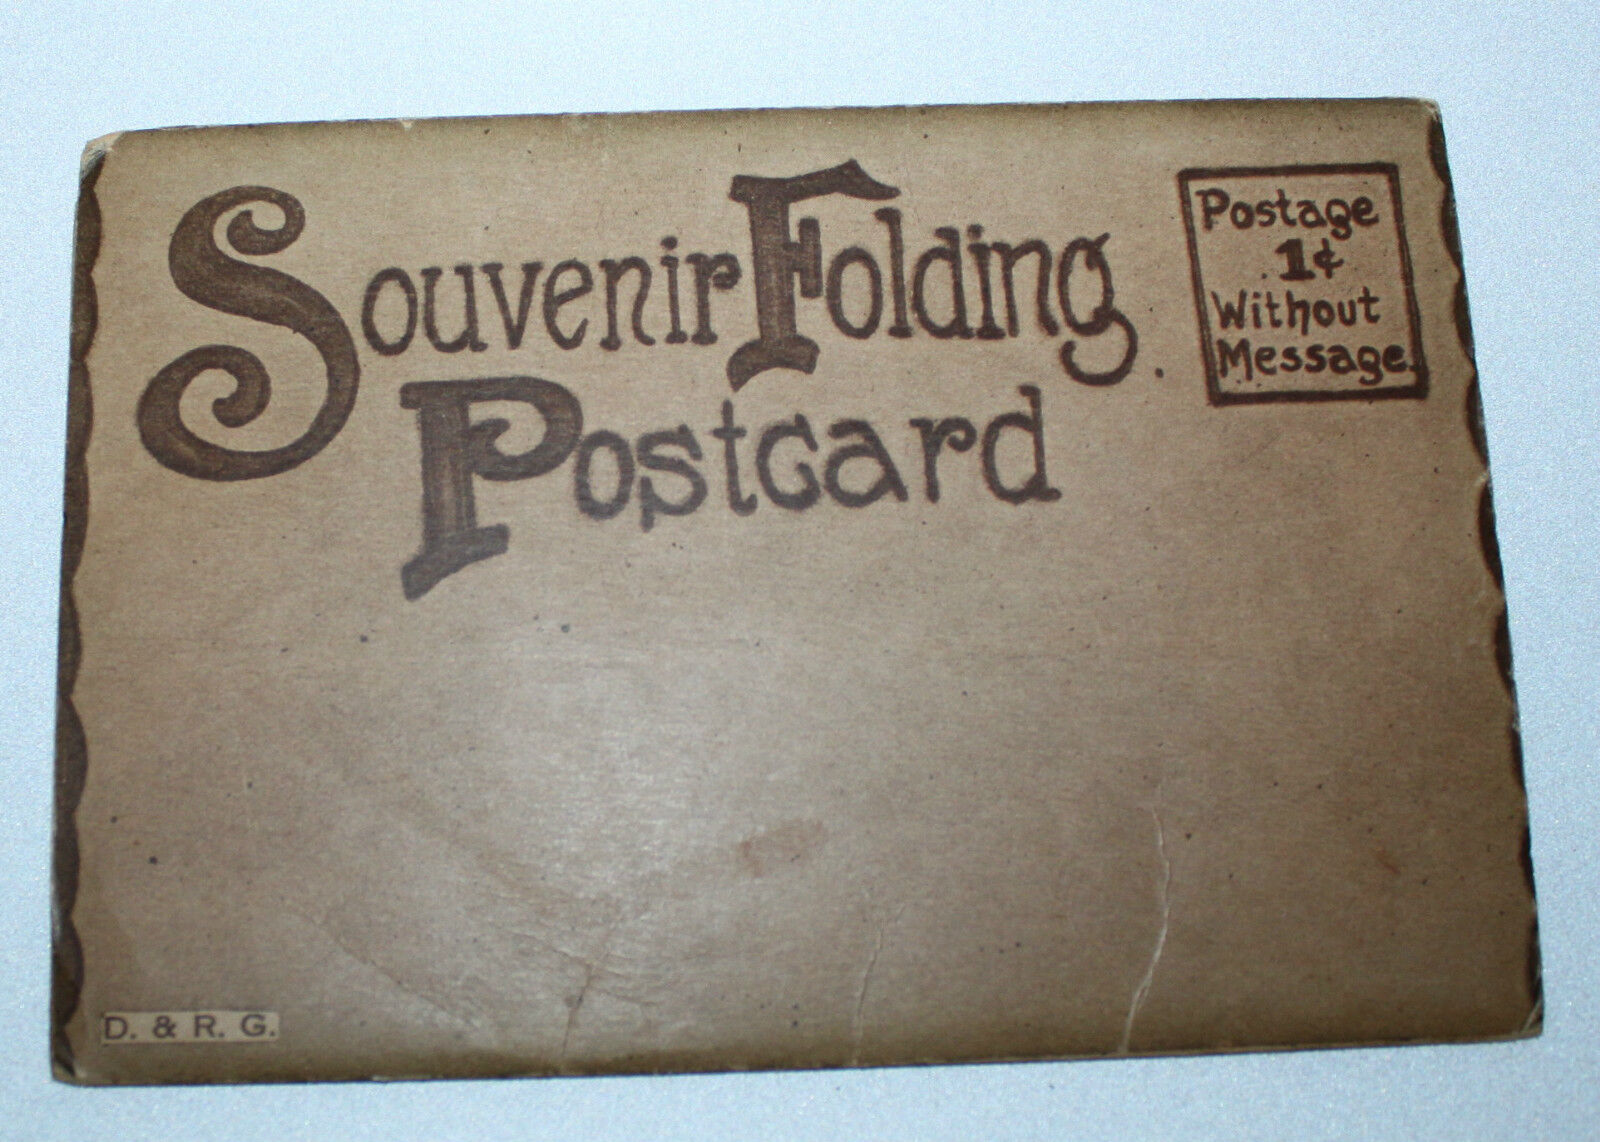 Vtg Train Railroad Postcards Souvenir Folder Folding Set D&R G  Travel Unsent